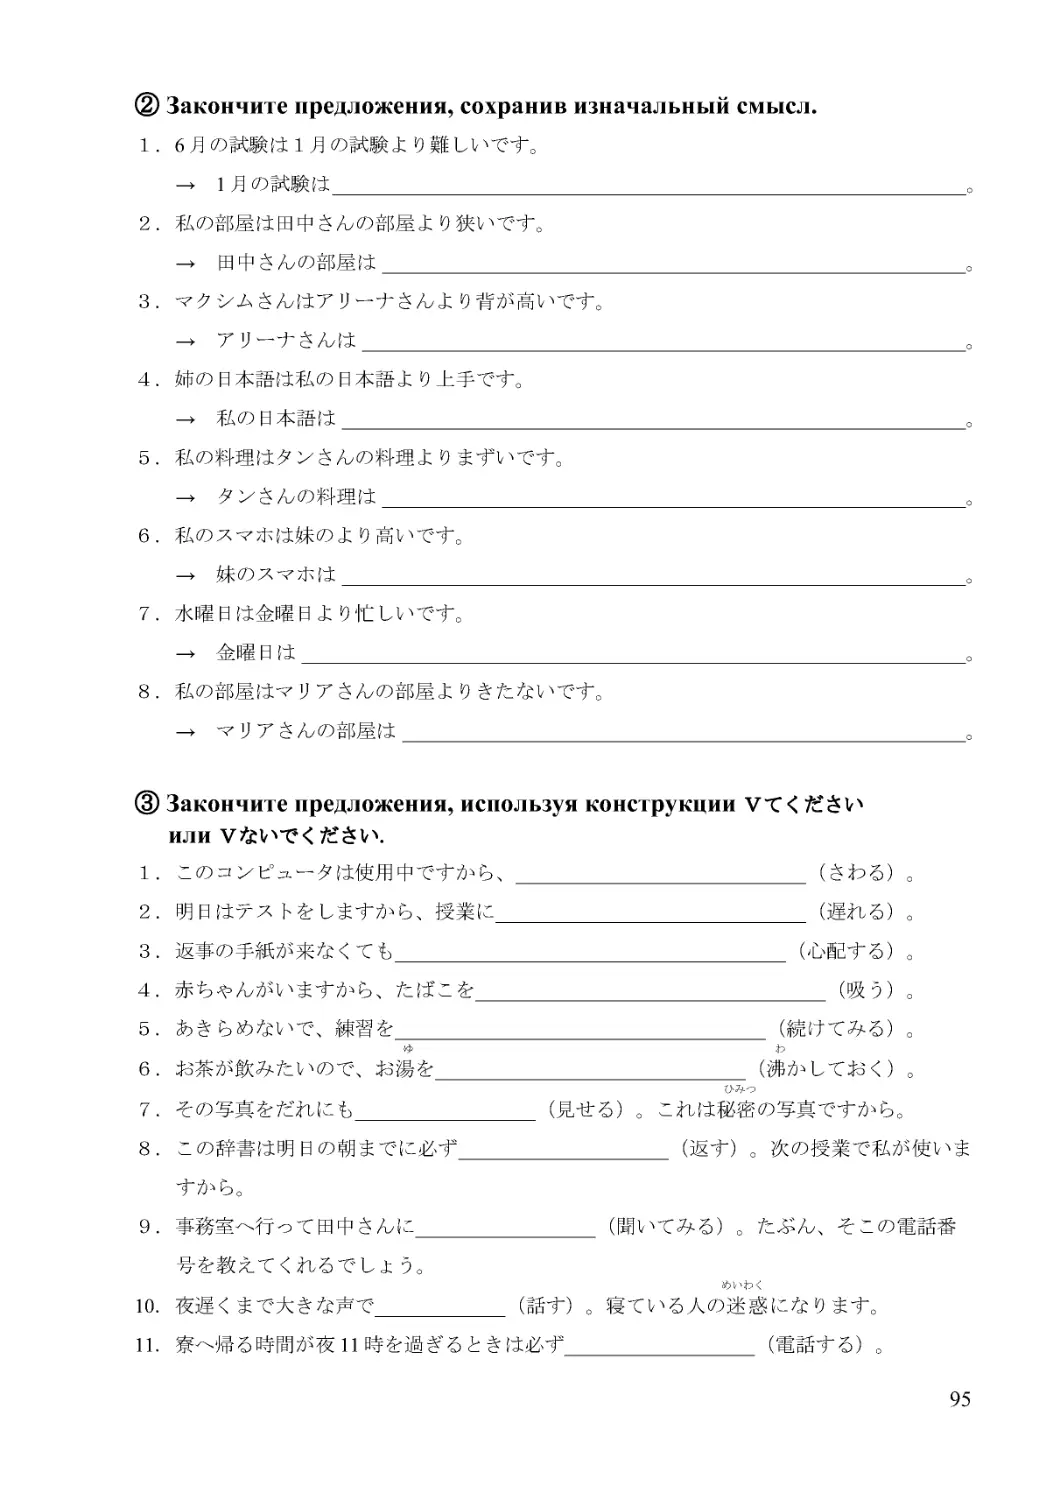 １．6月の試験は１月の試験より難しいです。
→　1月の試験は 。
２．私の部屋は田中さんの部屋より狭いです。
→　田中さんの部屋は 。
３．マクシムさんはアリーナさんより背が高いです。
→　アリーナさんは 。
４．姉の日本語は私の日本語より上手です。
→　私の日本語は 。
５．私の料理はタンさんの料理よりまずいです。
→　タンさんの料理は 。
６．私のスマホは妹のより高いです。
→　妹のスマホは 。
７．水曜日は金曜日より忙しいです。
→　金曜日は 。
８．私の部屋はマリアさんの部屋よりきたないです。
→　マリアさんの部屋は 。
１．このコンピュータは使用中ですから、_____________________________（さわる）。
２．明日はテストをしますから、授業に_______________________________（遅れる）。
３．返事の手紙が来なくても_______________________________________（心配する）。
４．赤ちゃんがいますから、たばこを___________________________________（吸う）。
５．あきらめないで、練習を_____________________________________（続けてみる）。
ゆ　　　　　　　　　　　　　　　　　　　　　　　　　　　　　　　　　わ
６．お茶が飲みたいので、お湯を_______________________________（沸かしておく）。
ひみつ
７．その写真をだれにも__________________（見せる）。これは秘密の写真ですから。
８．この辞書は明日の朝までに必ず_____________________（返す）。次の授業で私が使いますから。
９．事務室へ行って田中さんに__________________（聞いてみる）。たぶん、そこの電話番
号を教えてくれるでしょう。
めいわく
10．夜遅くまで大きな声で_____________（話す）。寝ている人の迷惑になります。
11．寮へ帰る時間が夜11時を過ぎるときは必ず___________________（電話する）。